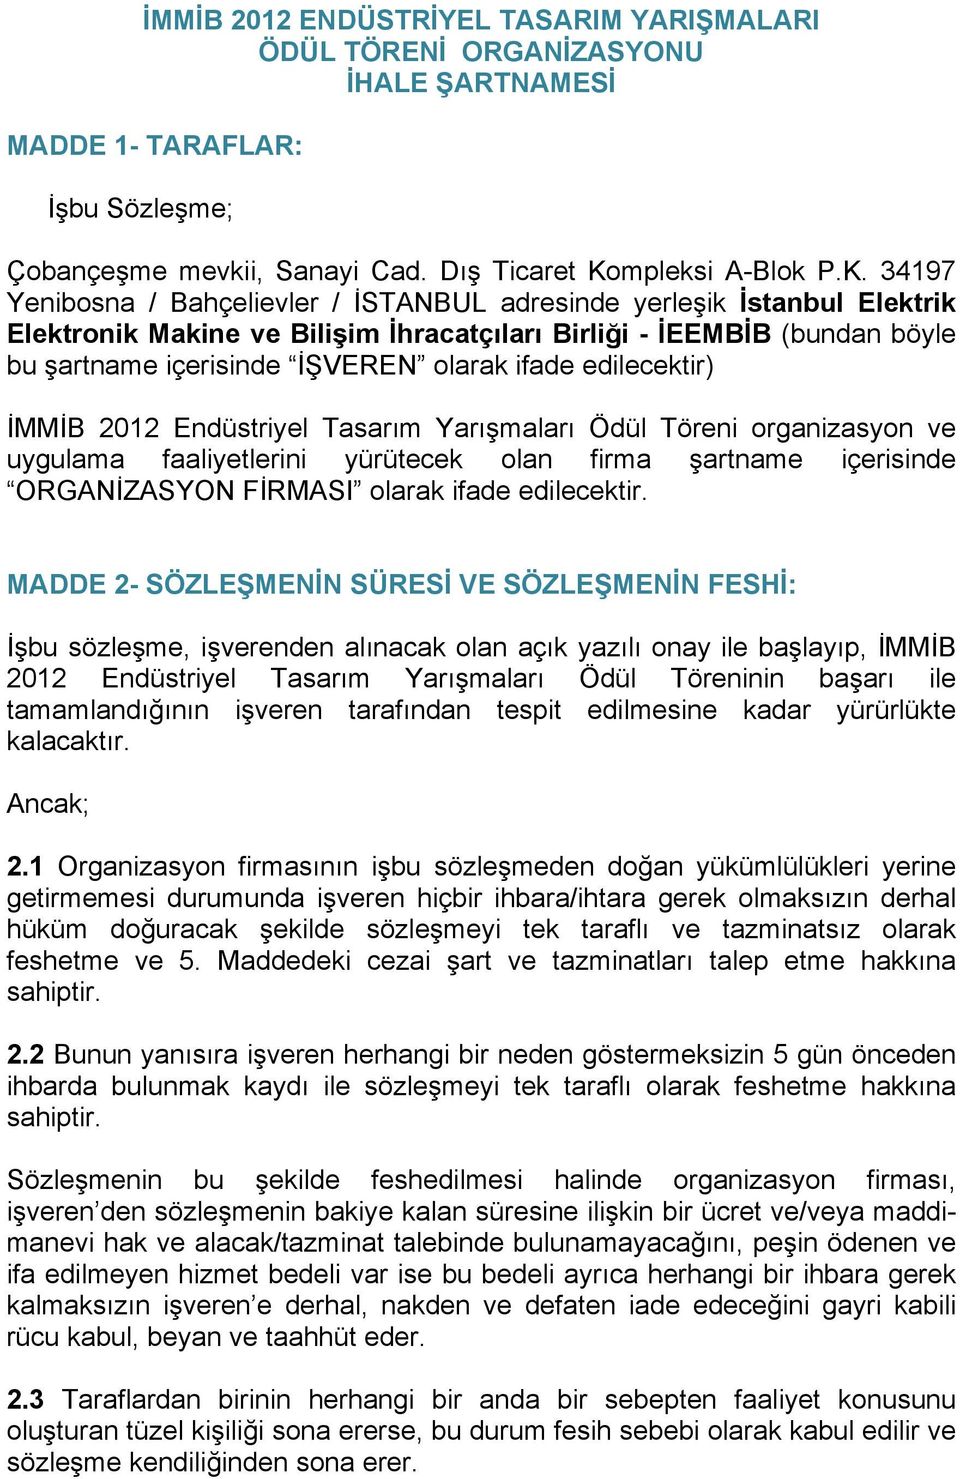 34197 Yenibosna / Bahçelievler / İSTANBUL adresinde yerleşik İstanbul Elektrik Elektronik Makine ve Bilişim İhracatçıları Birliği - İEEMBİB (bundan böyle bu şartname içerisinde İŞVEREN olarak ifade